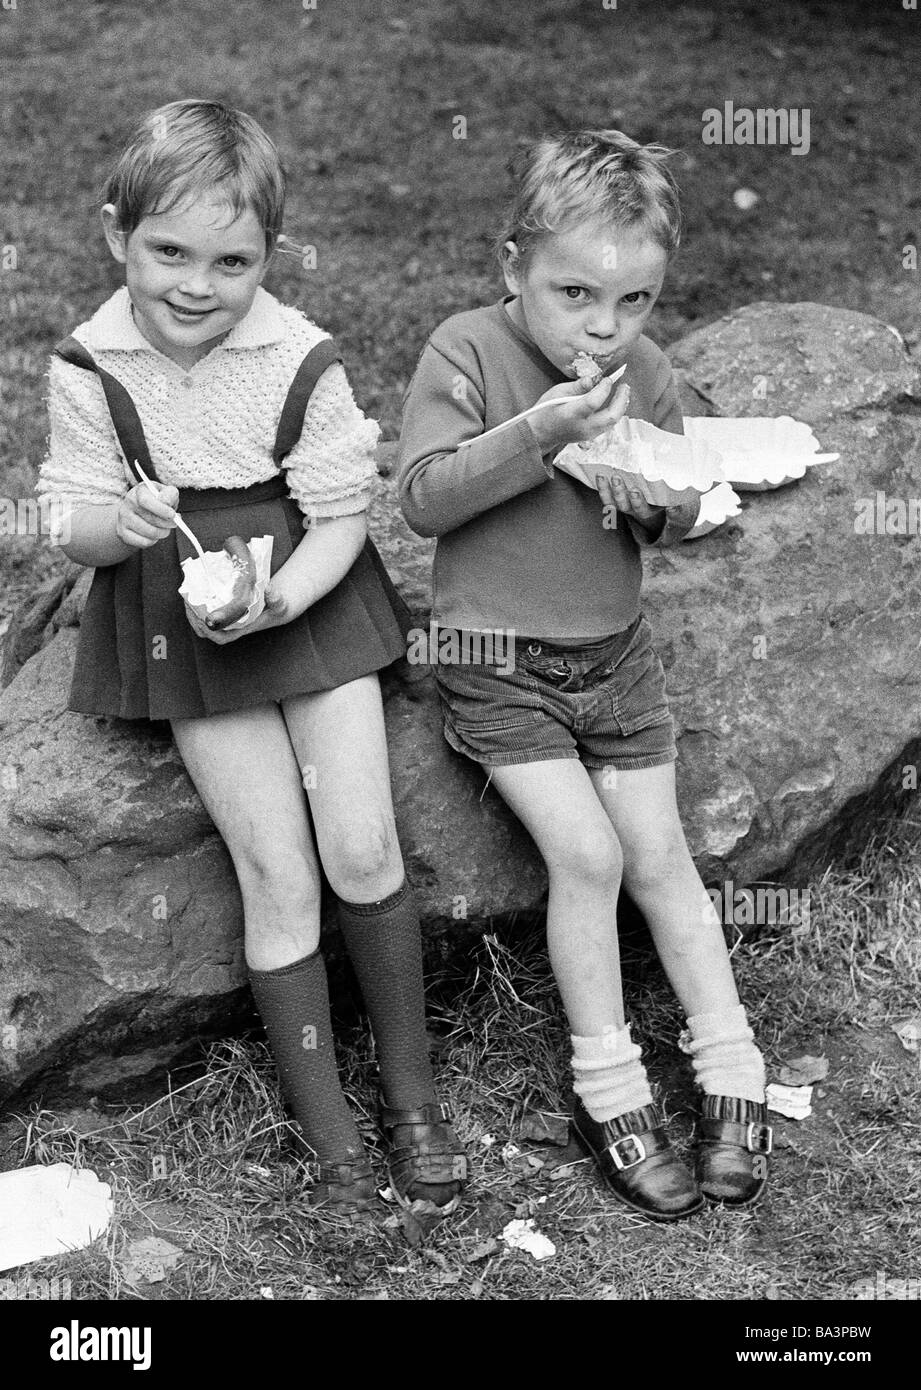 Negli anni settanta, foto in bianco e nero, persone, bambini, bambina e little boy seduti fianco a fianco su una roccia e mangiare un fast food, salsiccia e insalata di patate, di età compresa tra i 4 ed i 7 anni Foto Stock